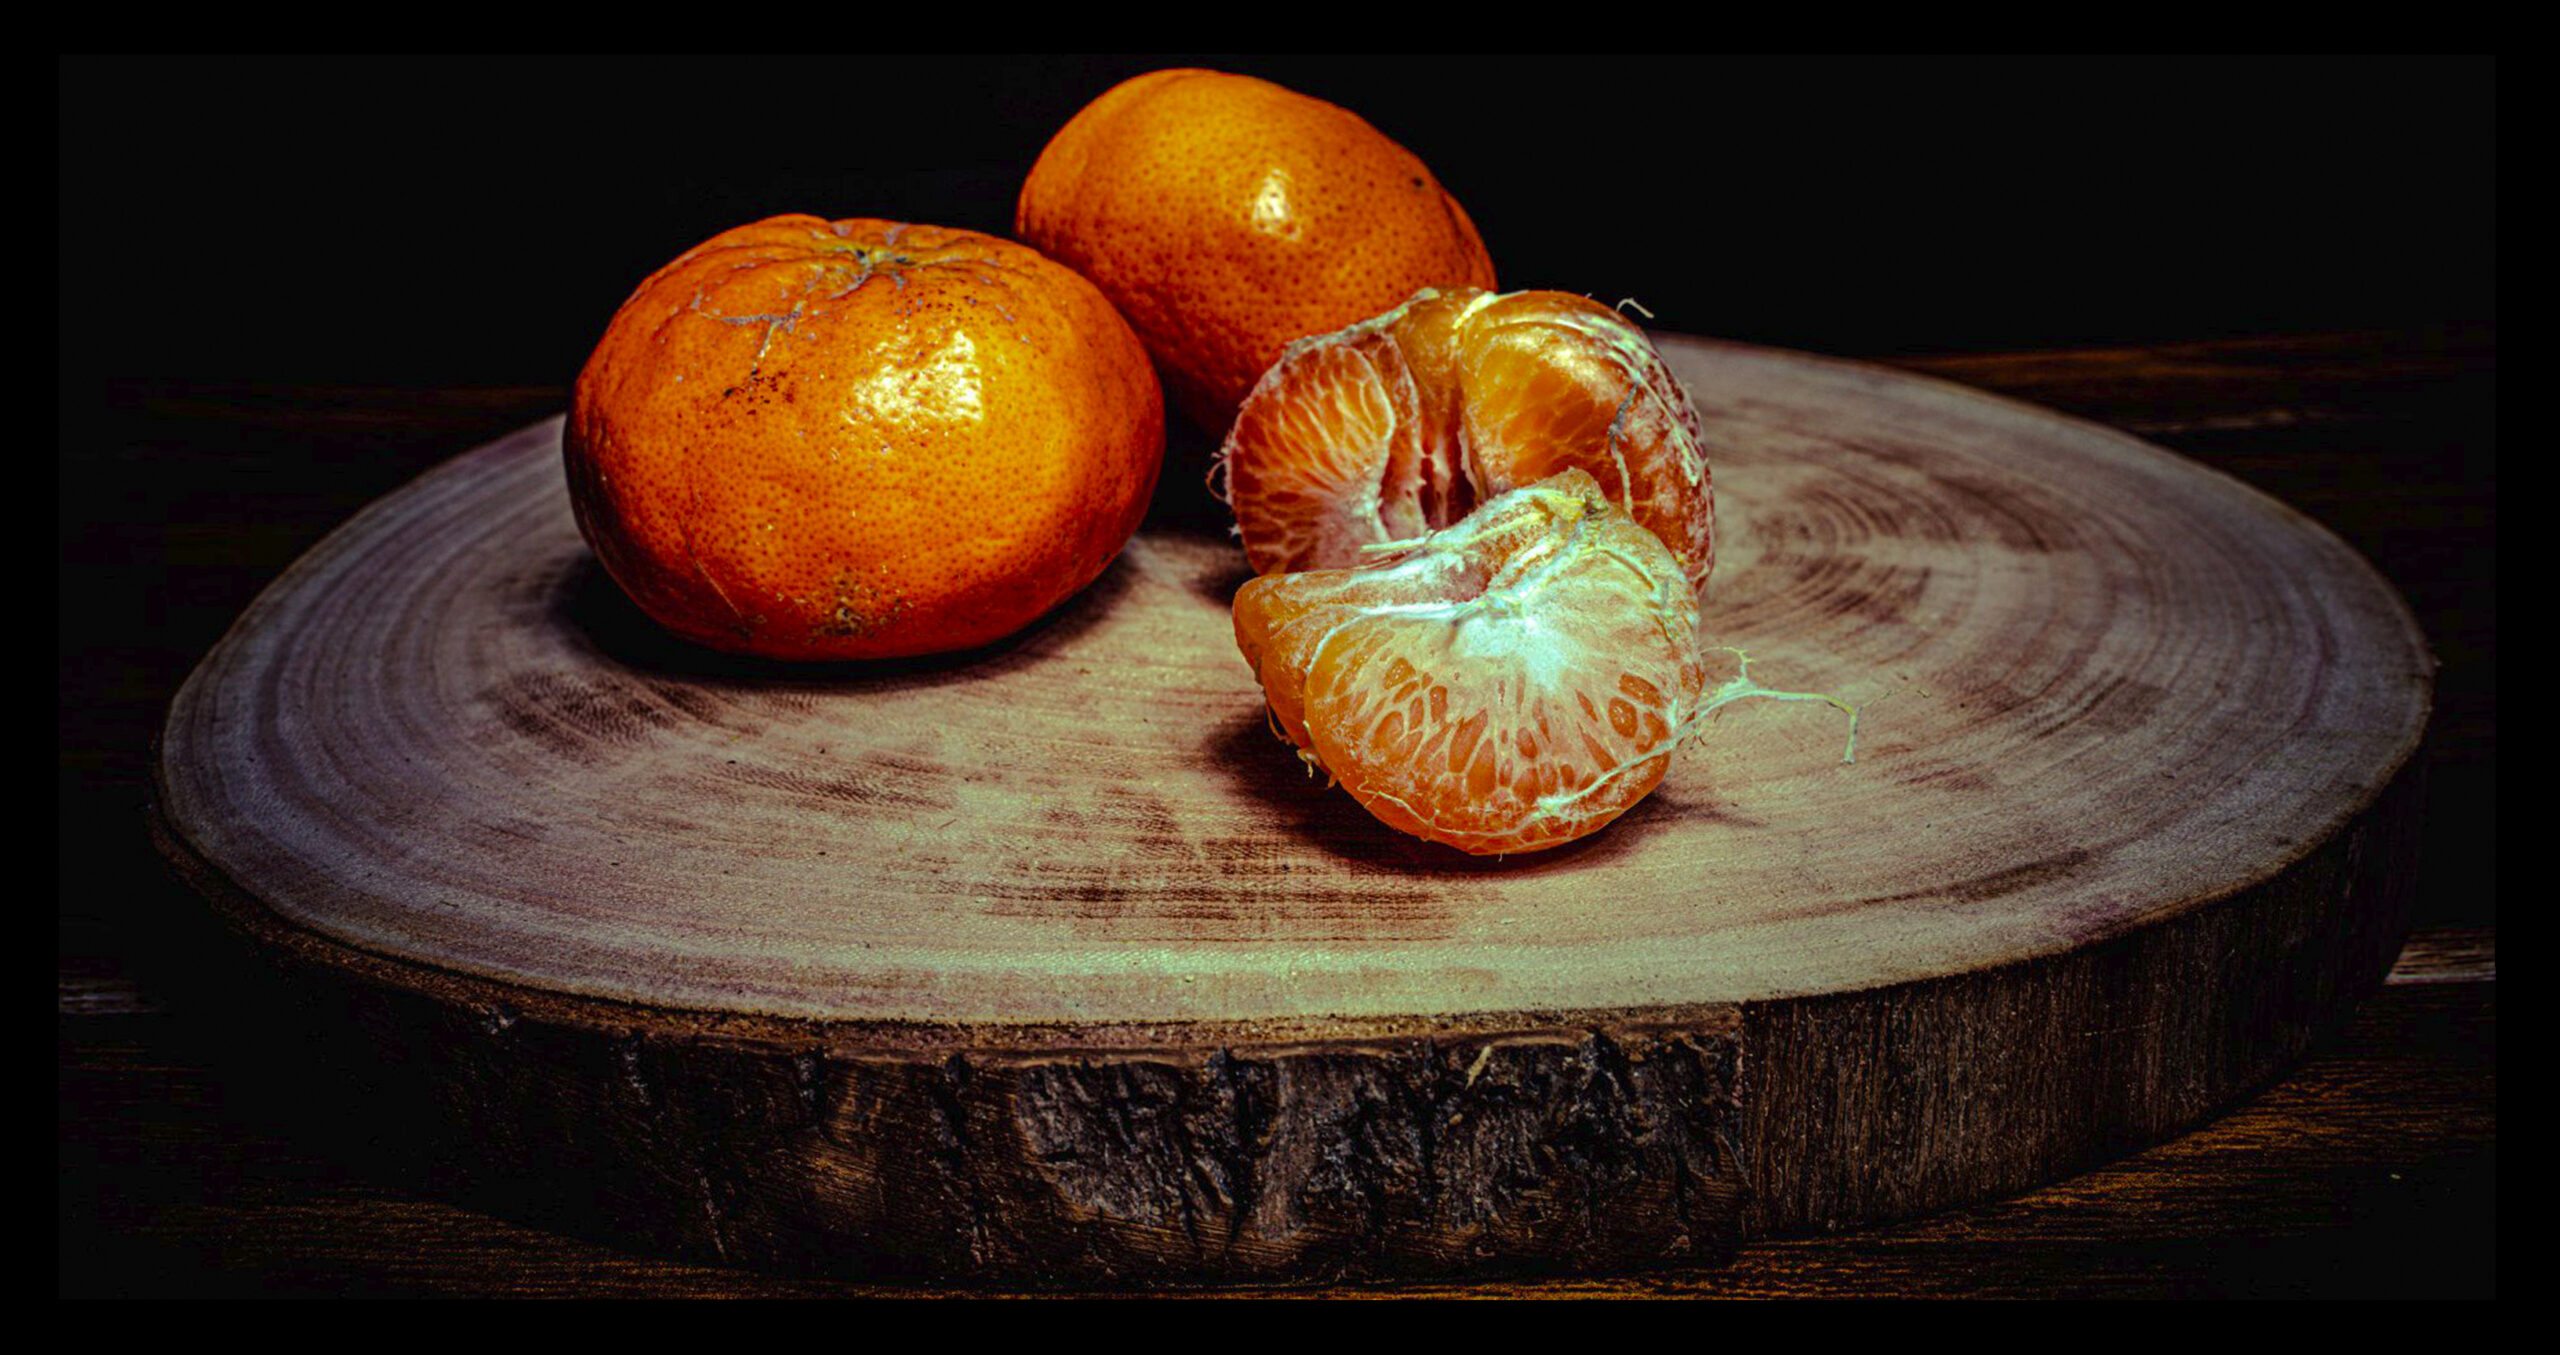 Mandarino: L’agrume puro, dolce e profumato